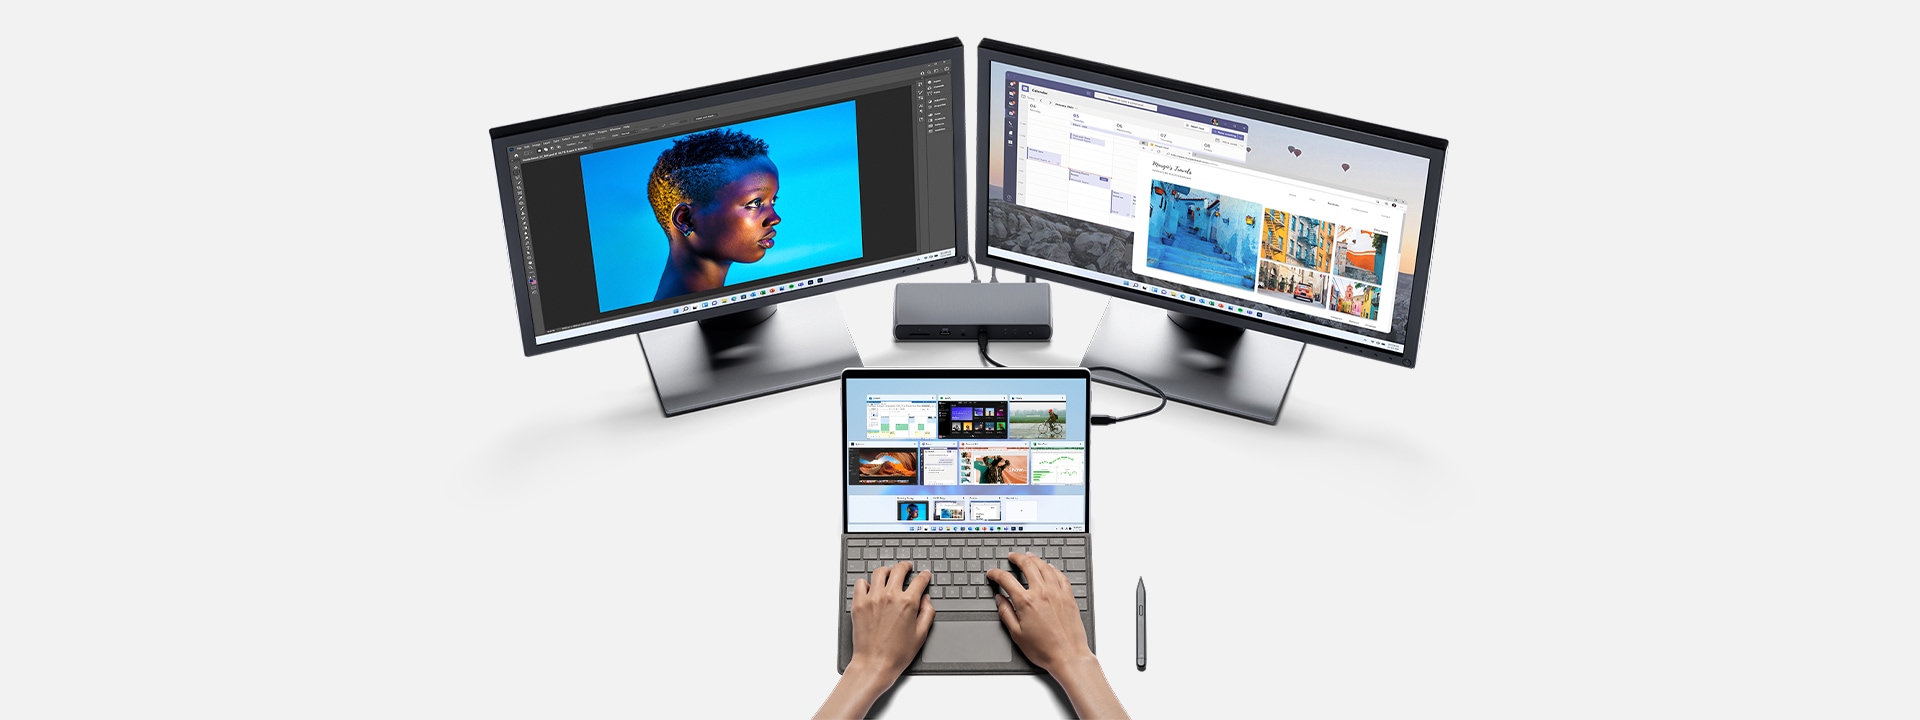 Surface Pro 8 conectado a dos monitores y se usa con Adobe.